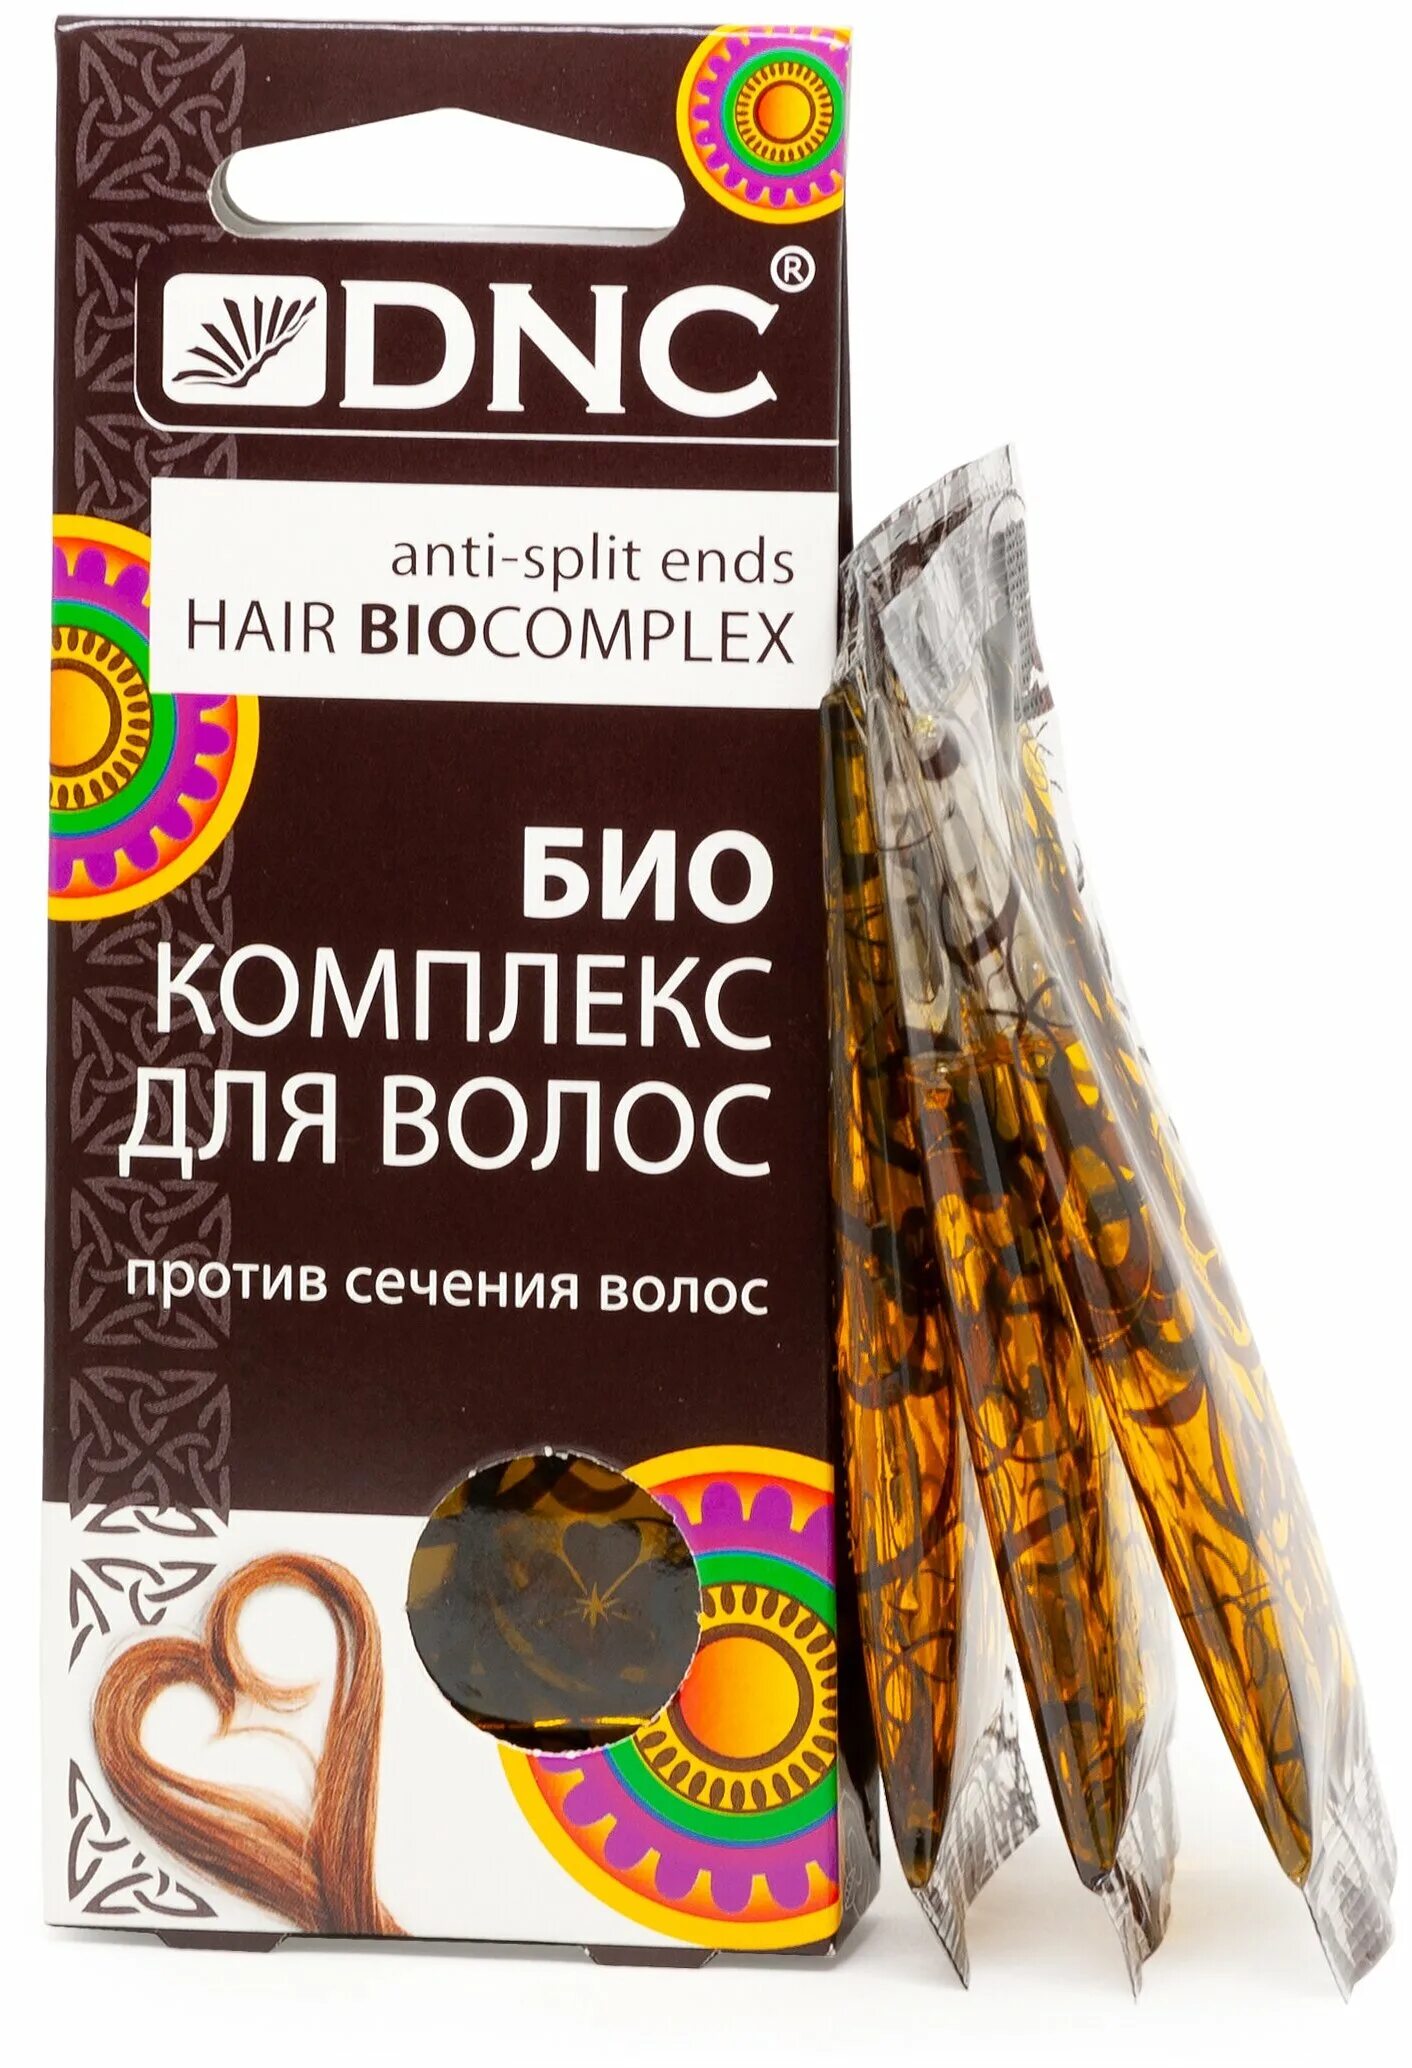 DNC. Биокомплекс для волос, 3*15 мл. Биокомплекс для волос DNC. DNC биокомплекс против выпадения волос 3х15мл. Биокомплекс для волос DNC против сечения волос.